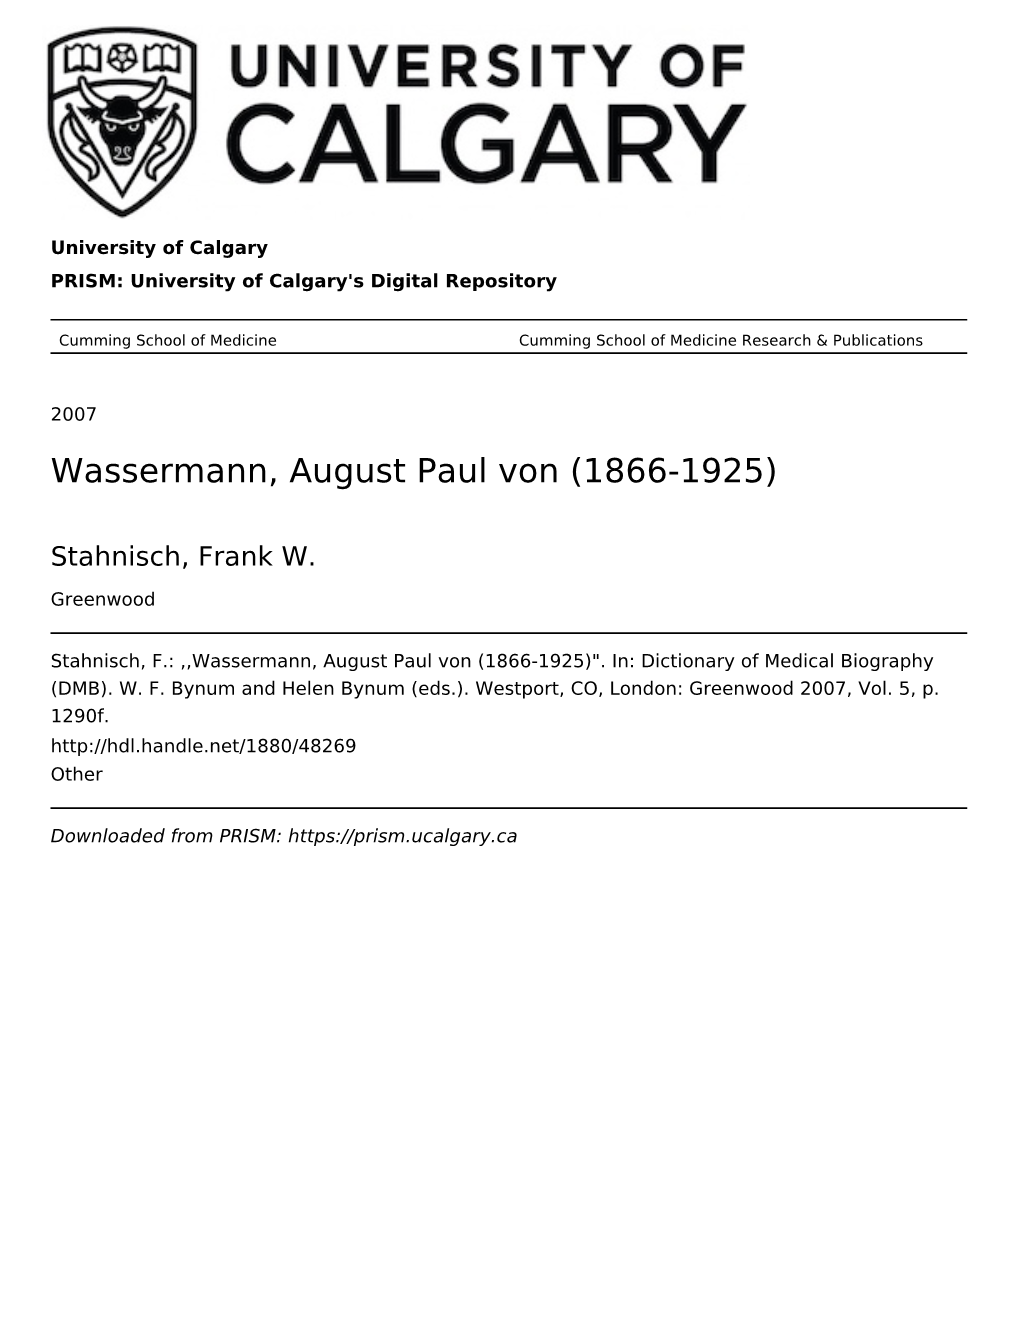 Wassermann, August Paul Von (1866-1925)